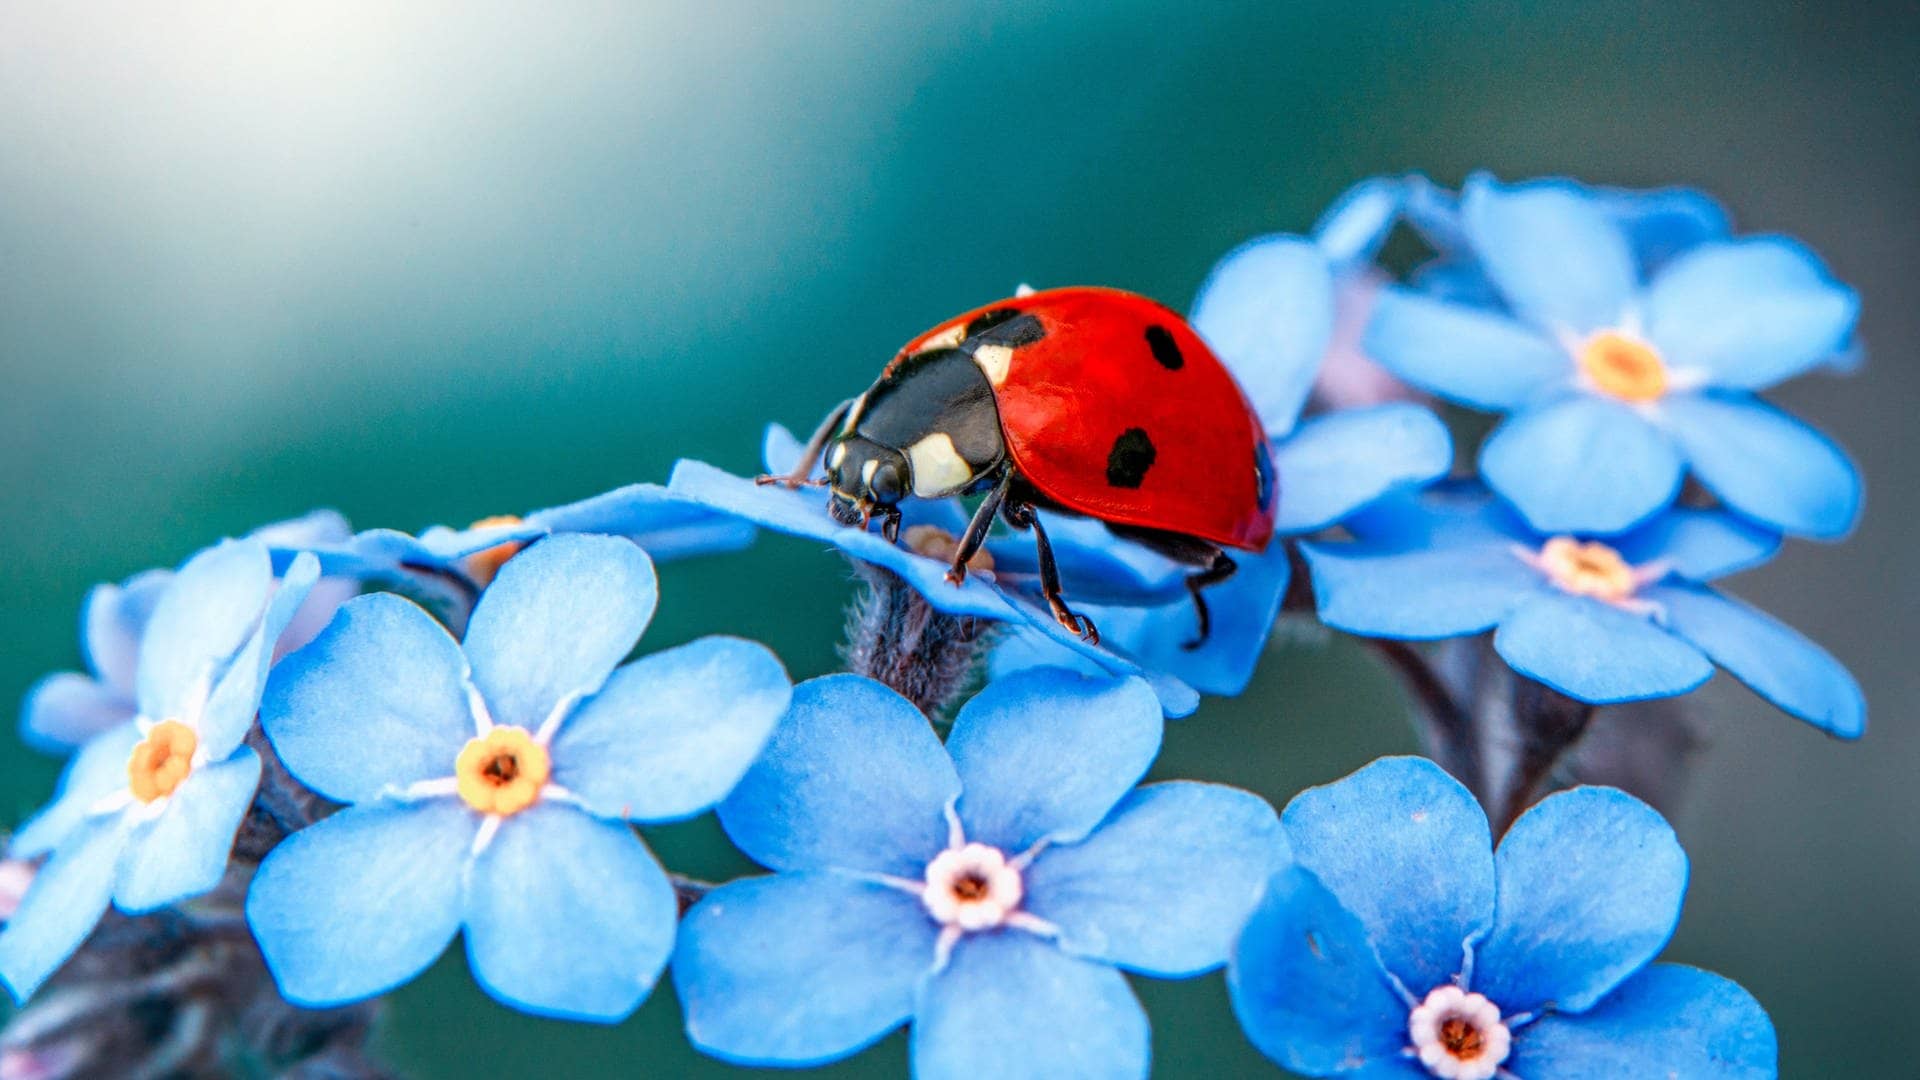 Das ist keine Stinkwanze, sondern ein Marienkäfer mit rotem Panzer und schwarzen Punkten. Er sitzt auf einer Blüte. (Foto: Adobe Stock, Adobe Stock/blackdiamond67)